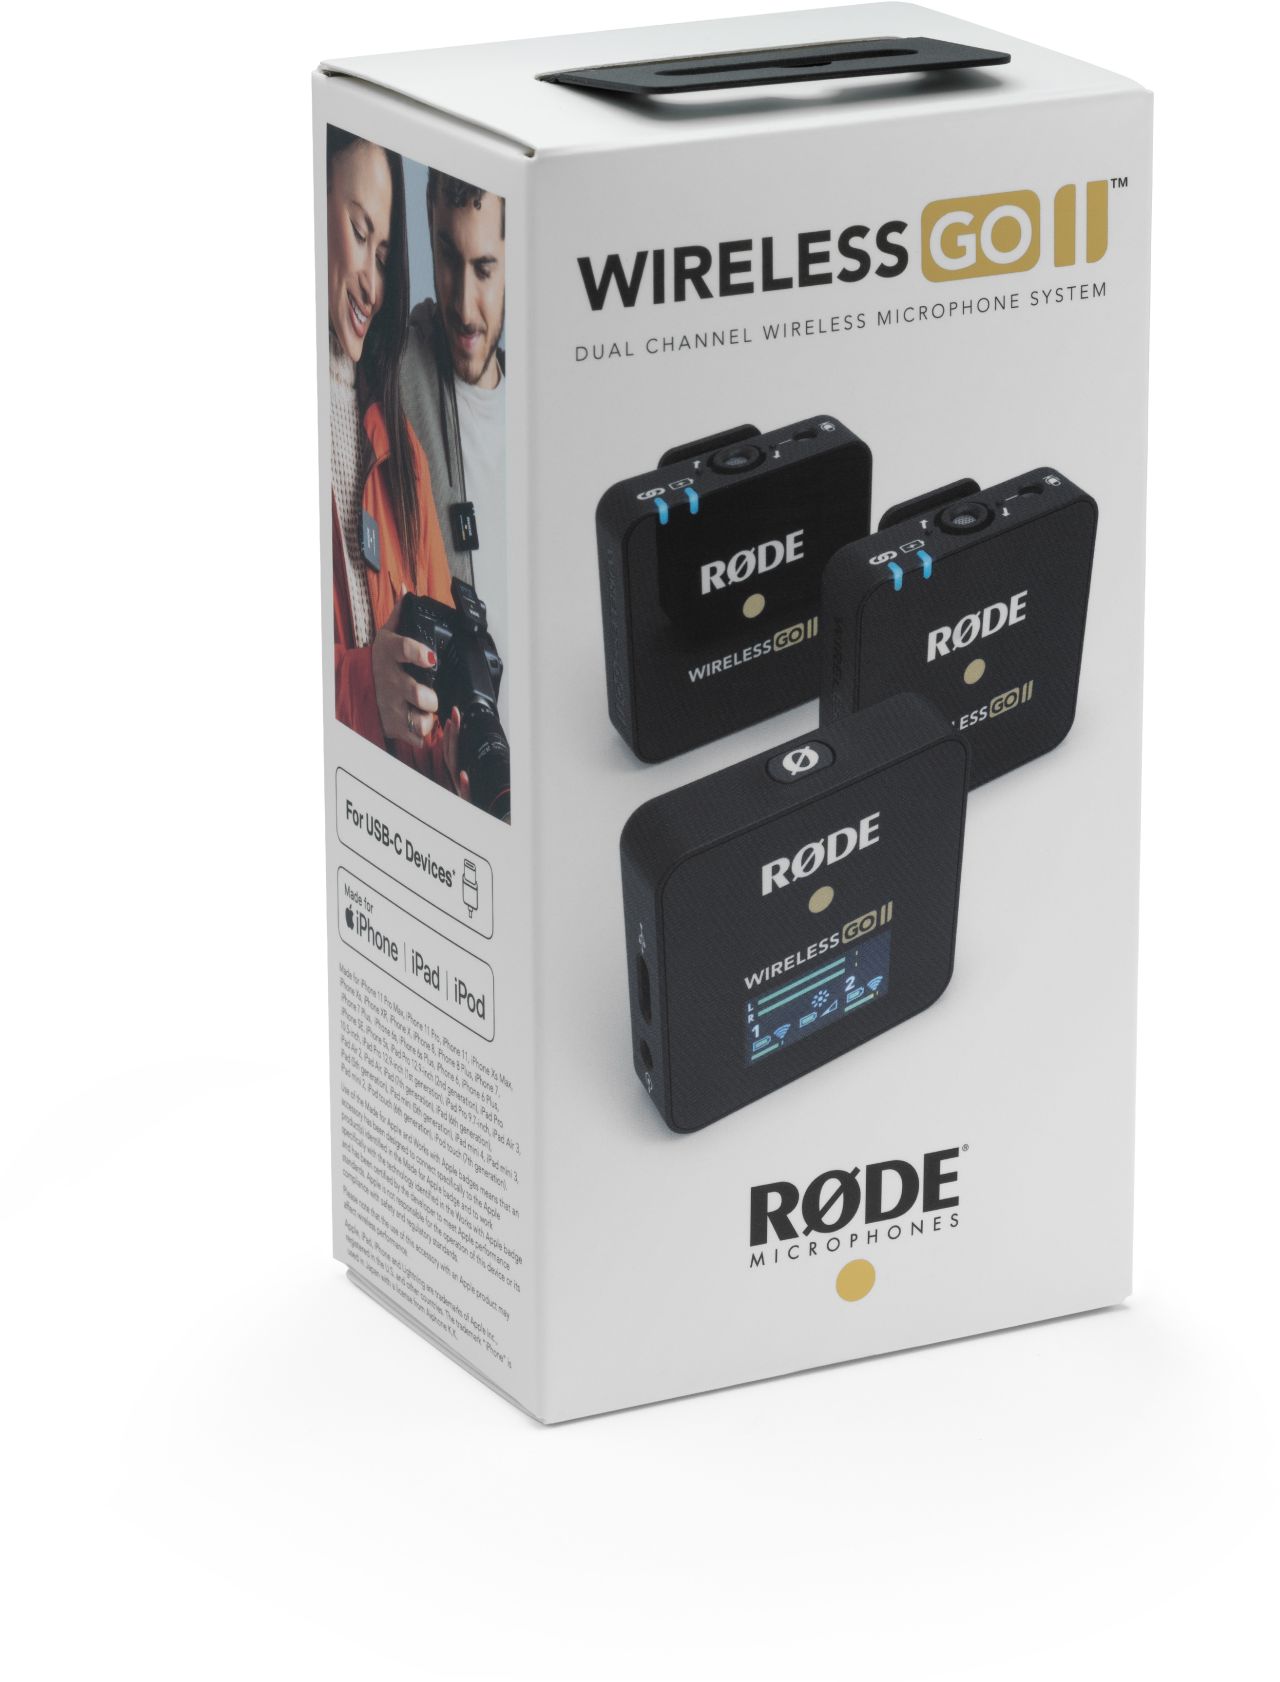 Rode Wireless Go II - Foto Erhardt